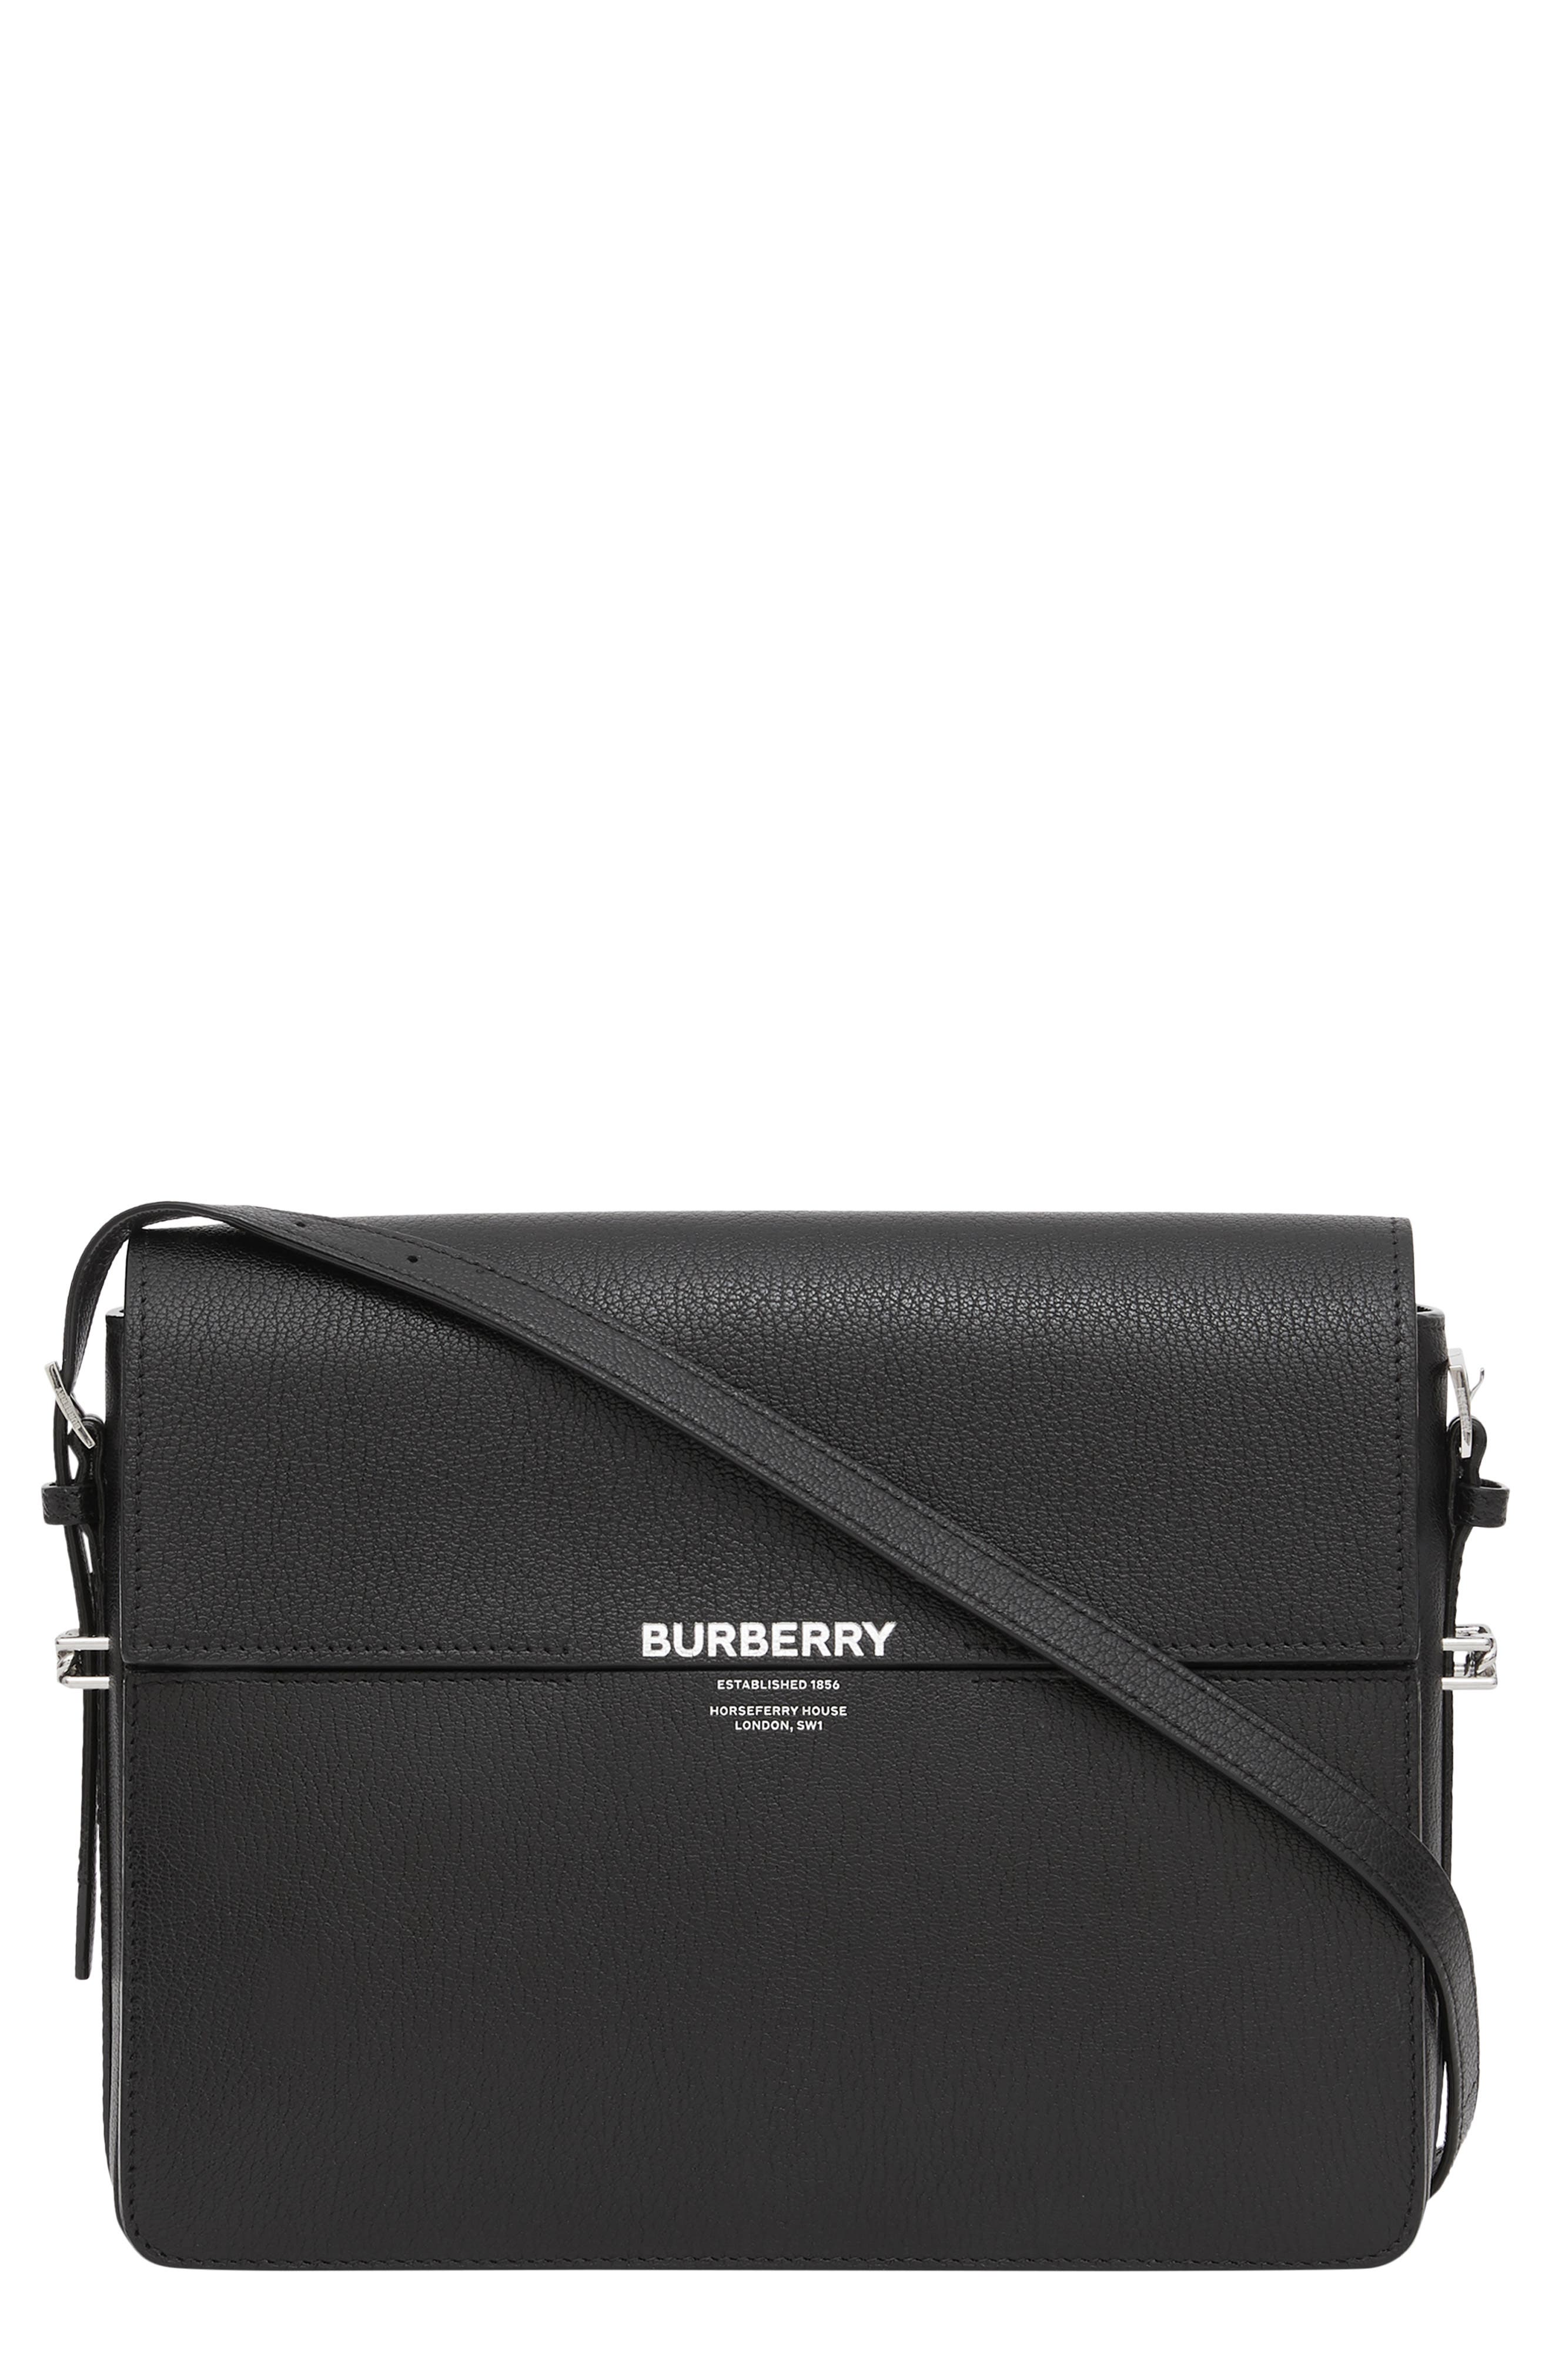 burberry grace leather shoulder bag